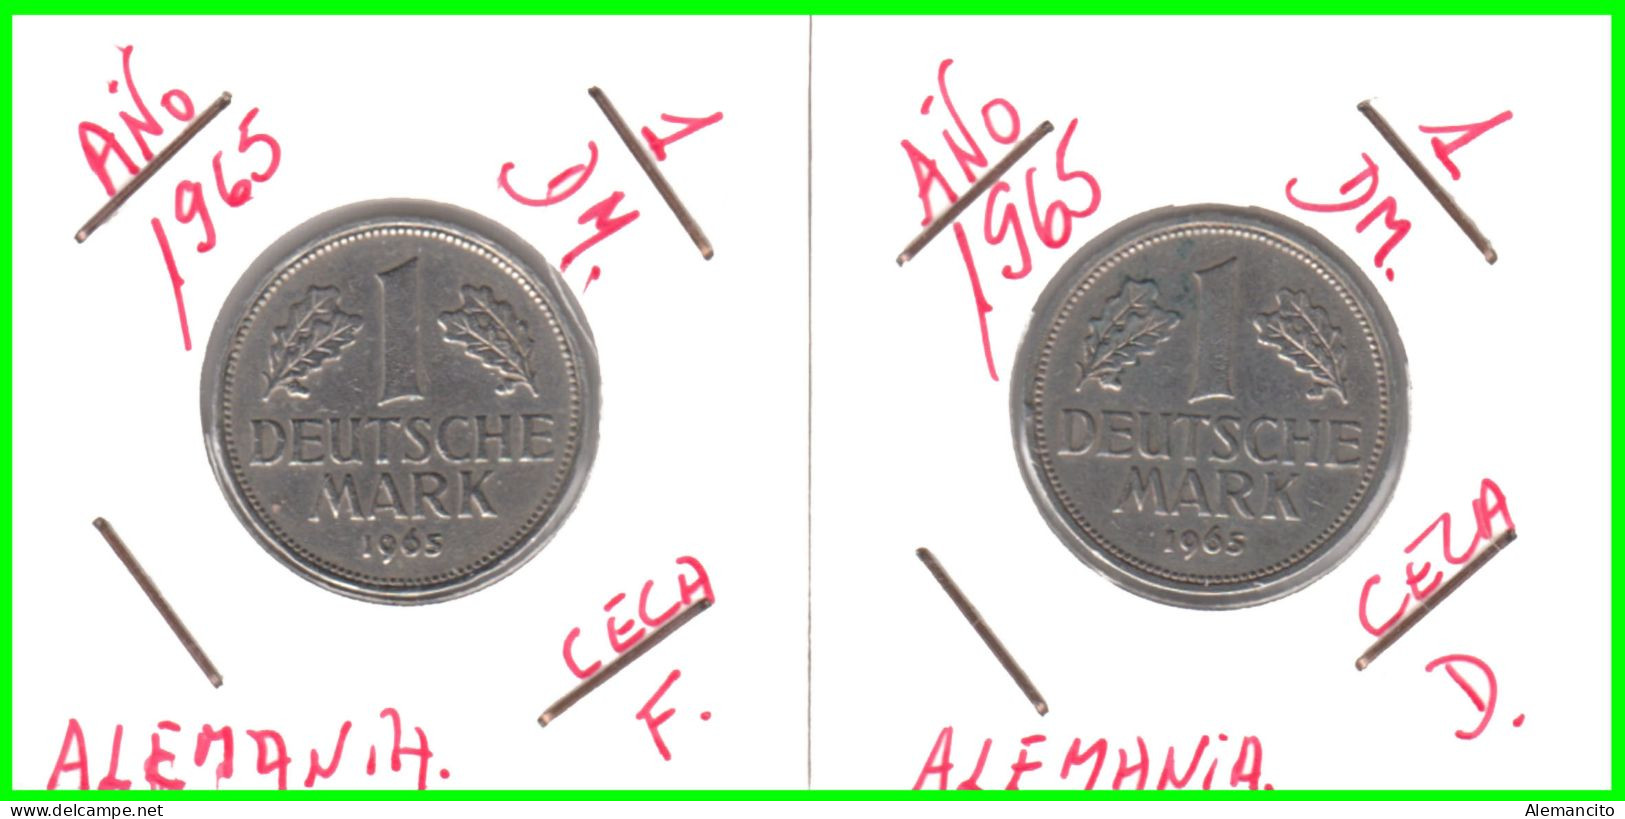 ALEMANIA - DEUTSCHLAND - GERMANY - 2 -MONEDAS DE 1.00 DM ESPIGAS Y AGUILA DEL AÑO 1965 CON LAS CECAS - D - F. - 1 Mark